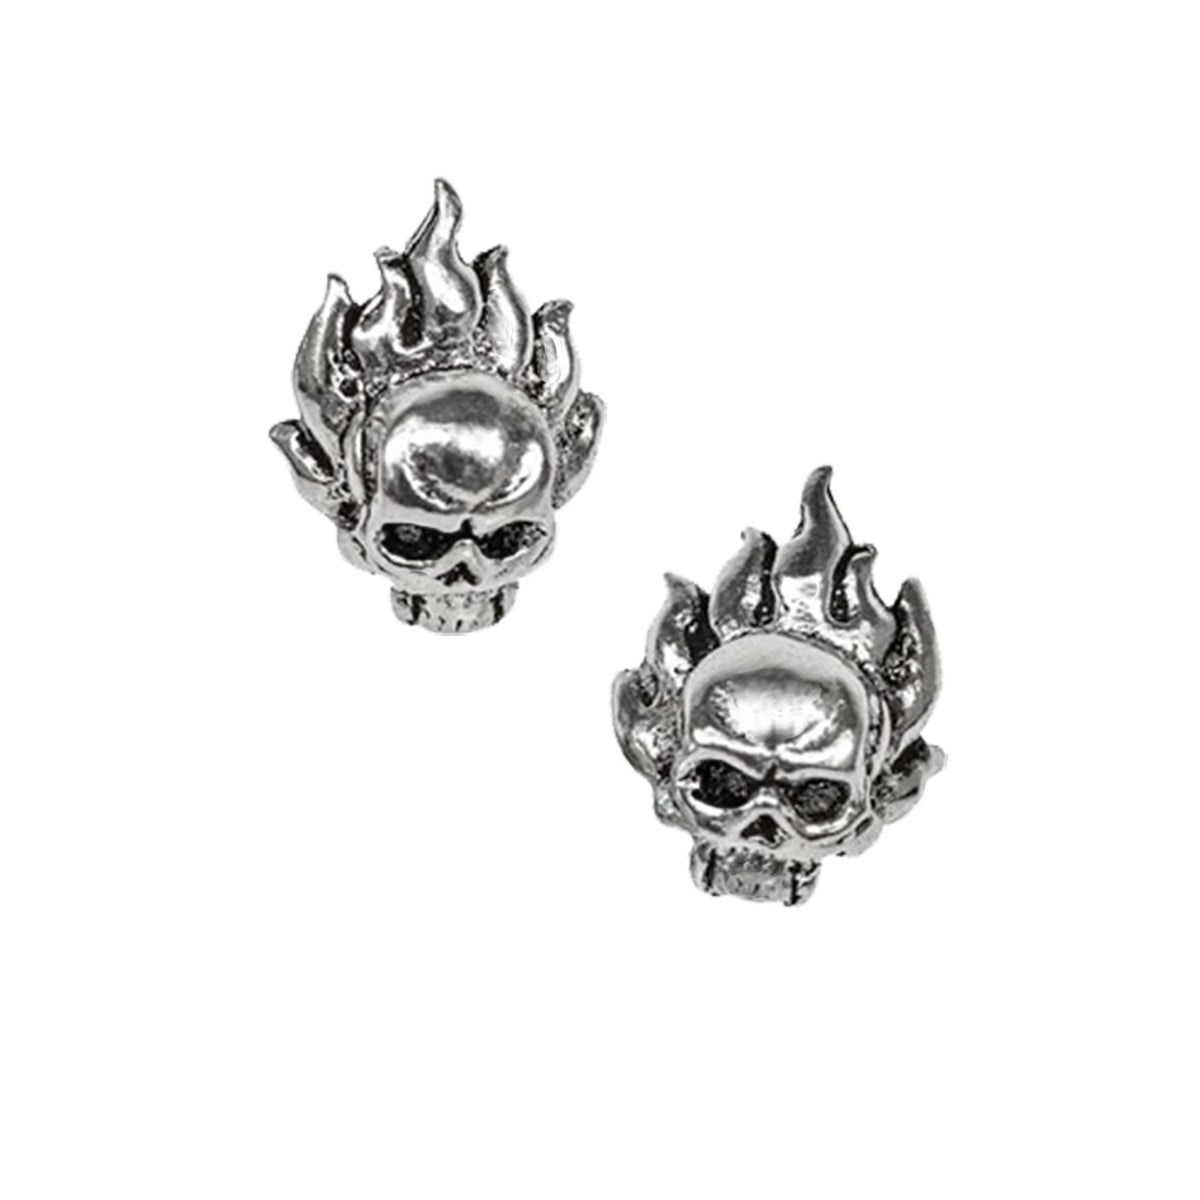 Flame skull studs - fire skull earrings 